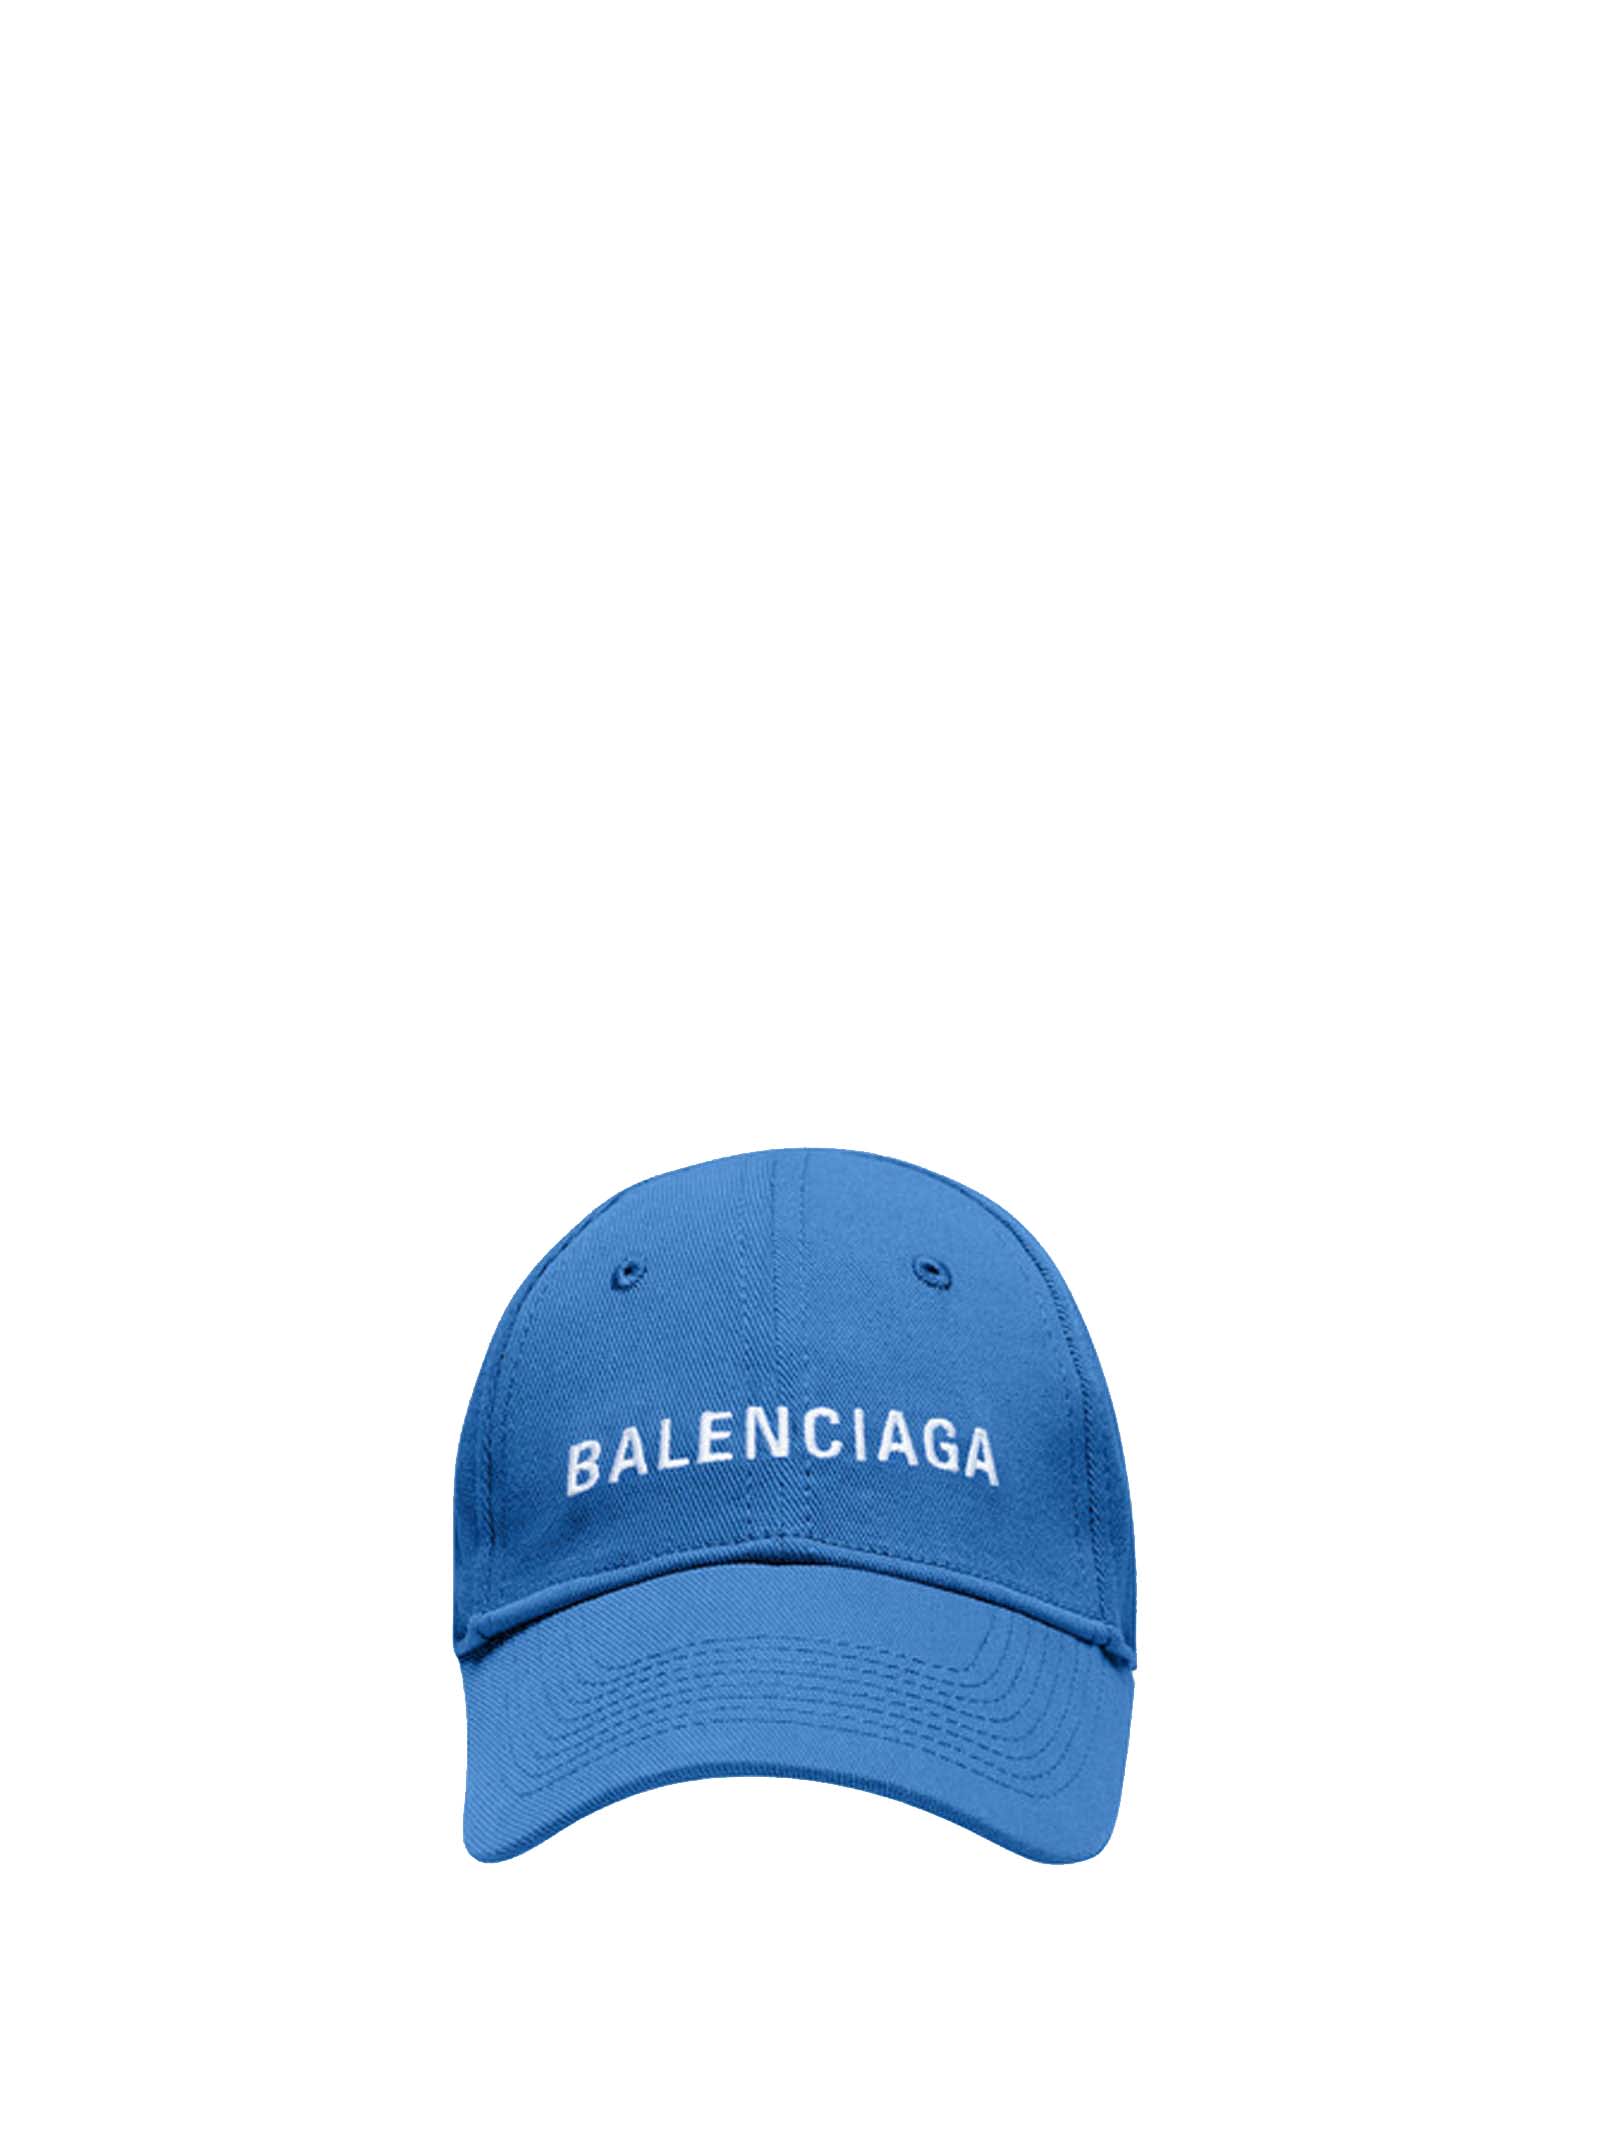 BALENCIAGA LOGO BASEBALL CAP,11234872